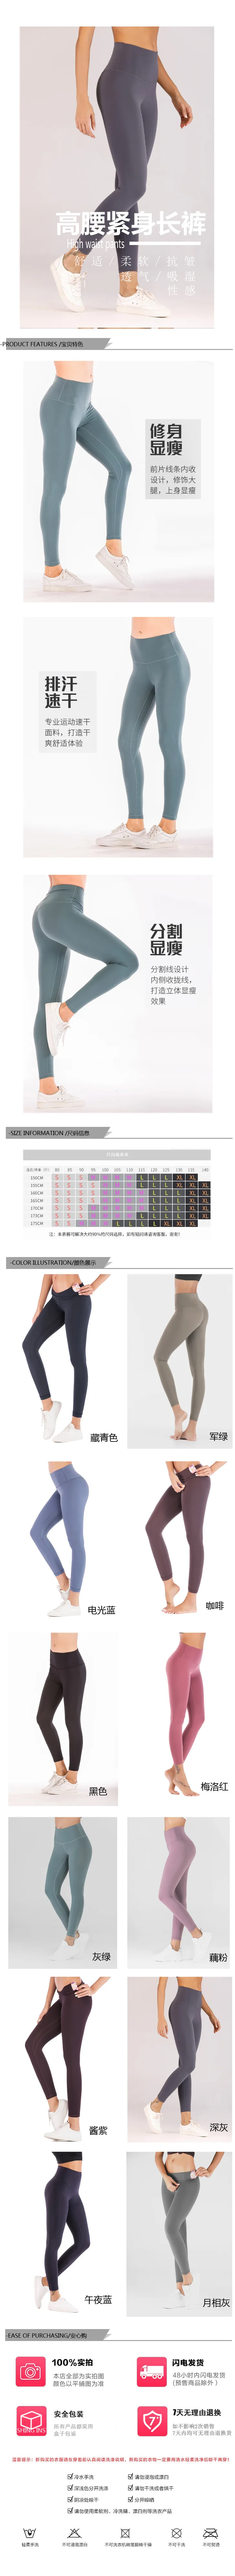 Lk18104 женские брюки для фитнеса, ягодицы, лифтинг, для похудения, с высокой талией, персиковые, ягодицы, лифтинг, брюки для йоги, LULU Classic St